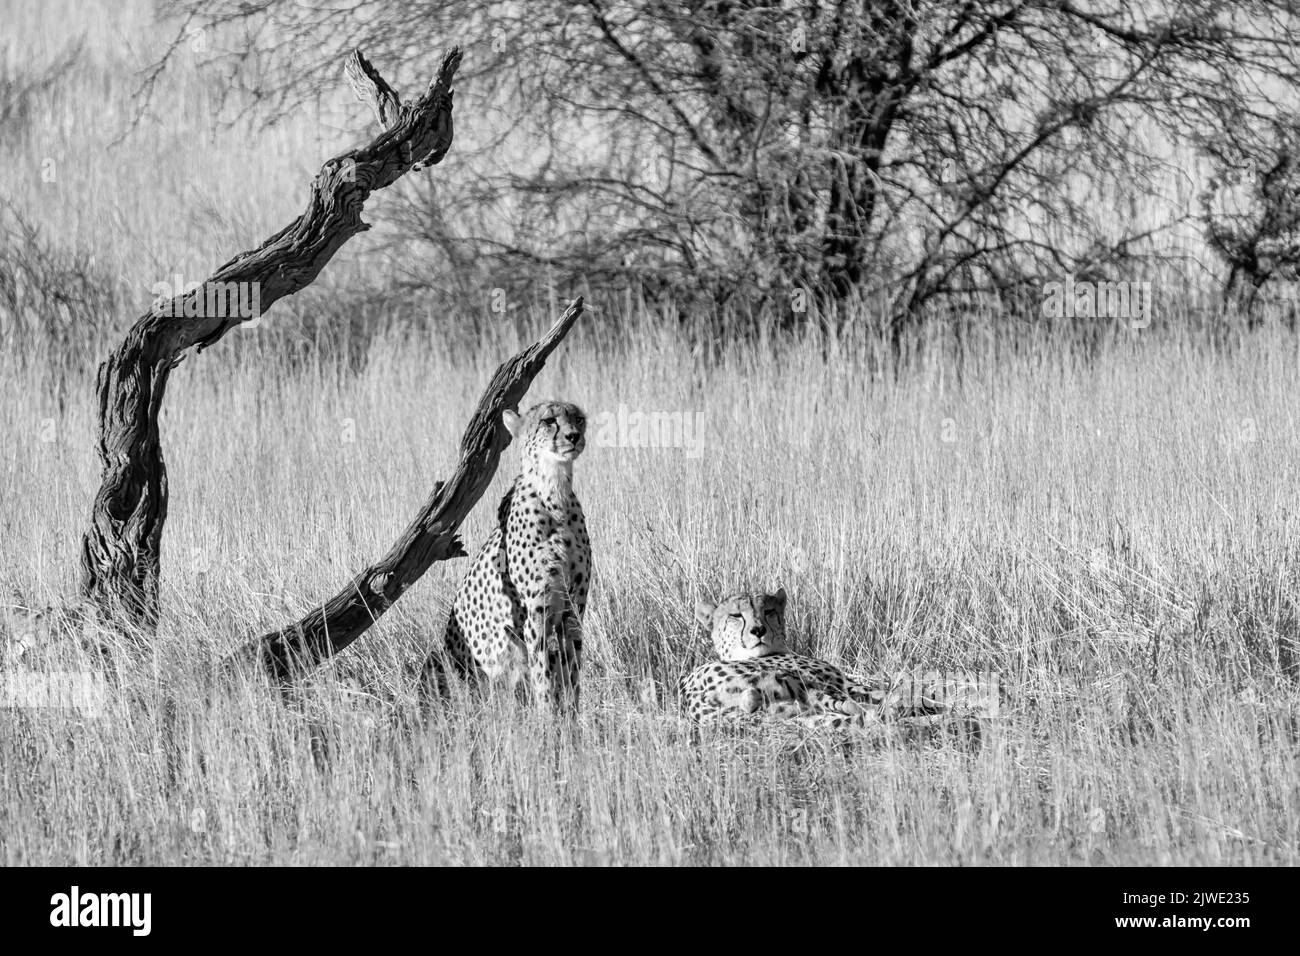 A trio of Cheetahs in Kalahari savannah Stock Photo